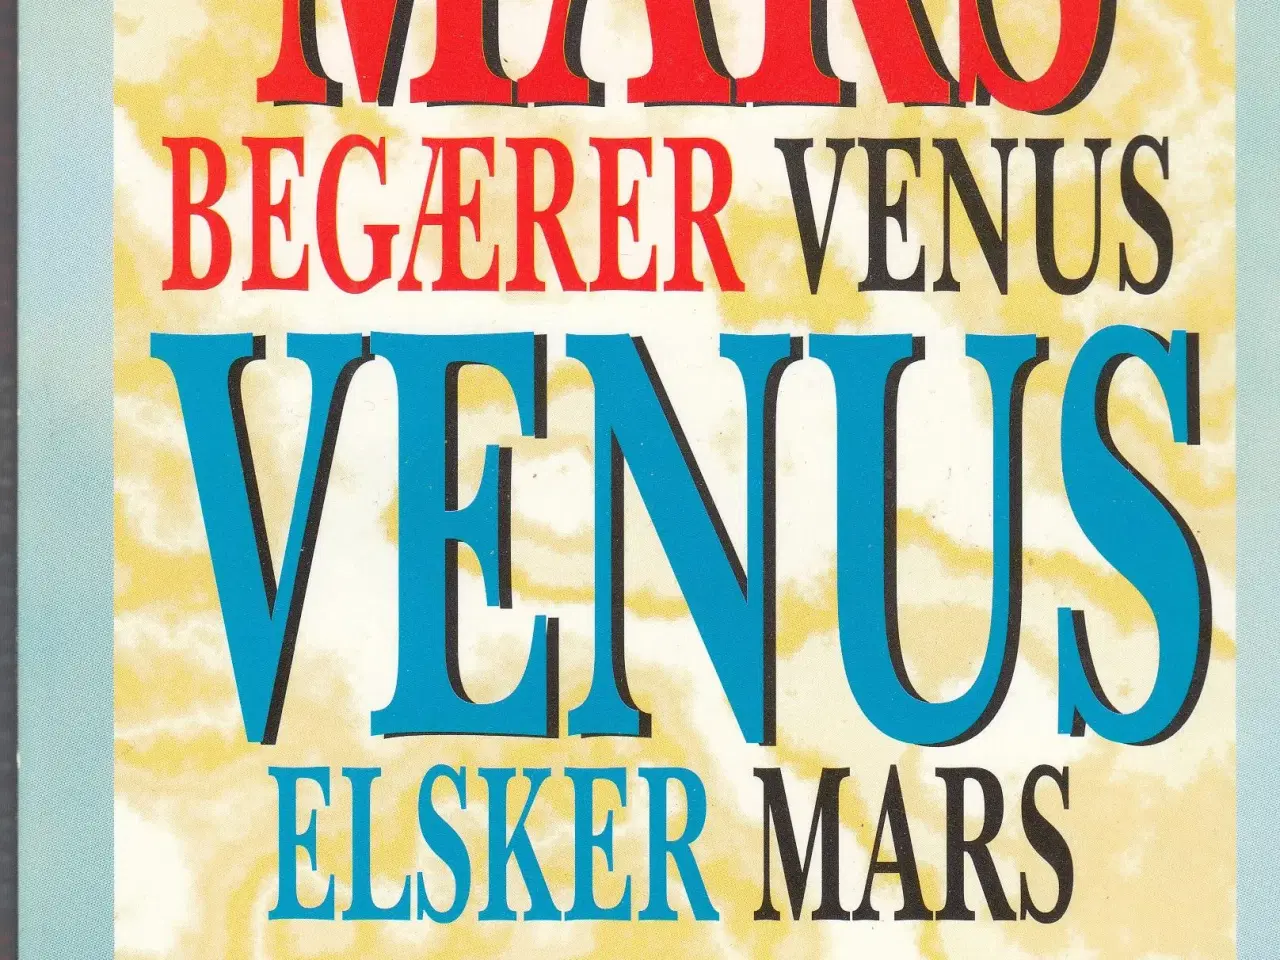 Billede 1 - MARS begærer Venus  VENUS elsker Mars 